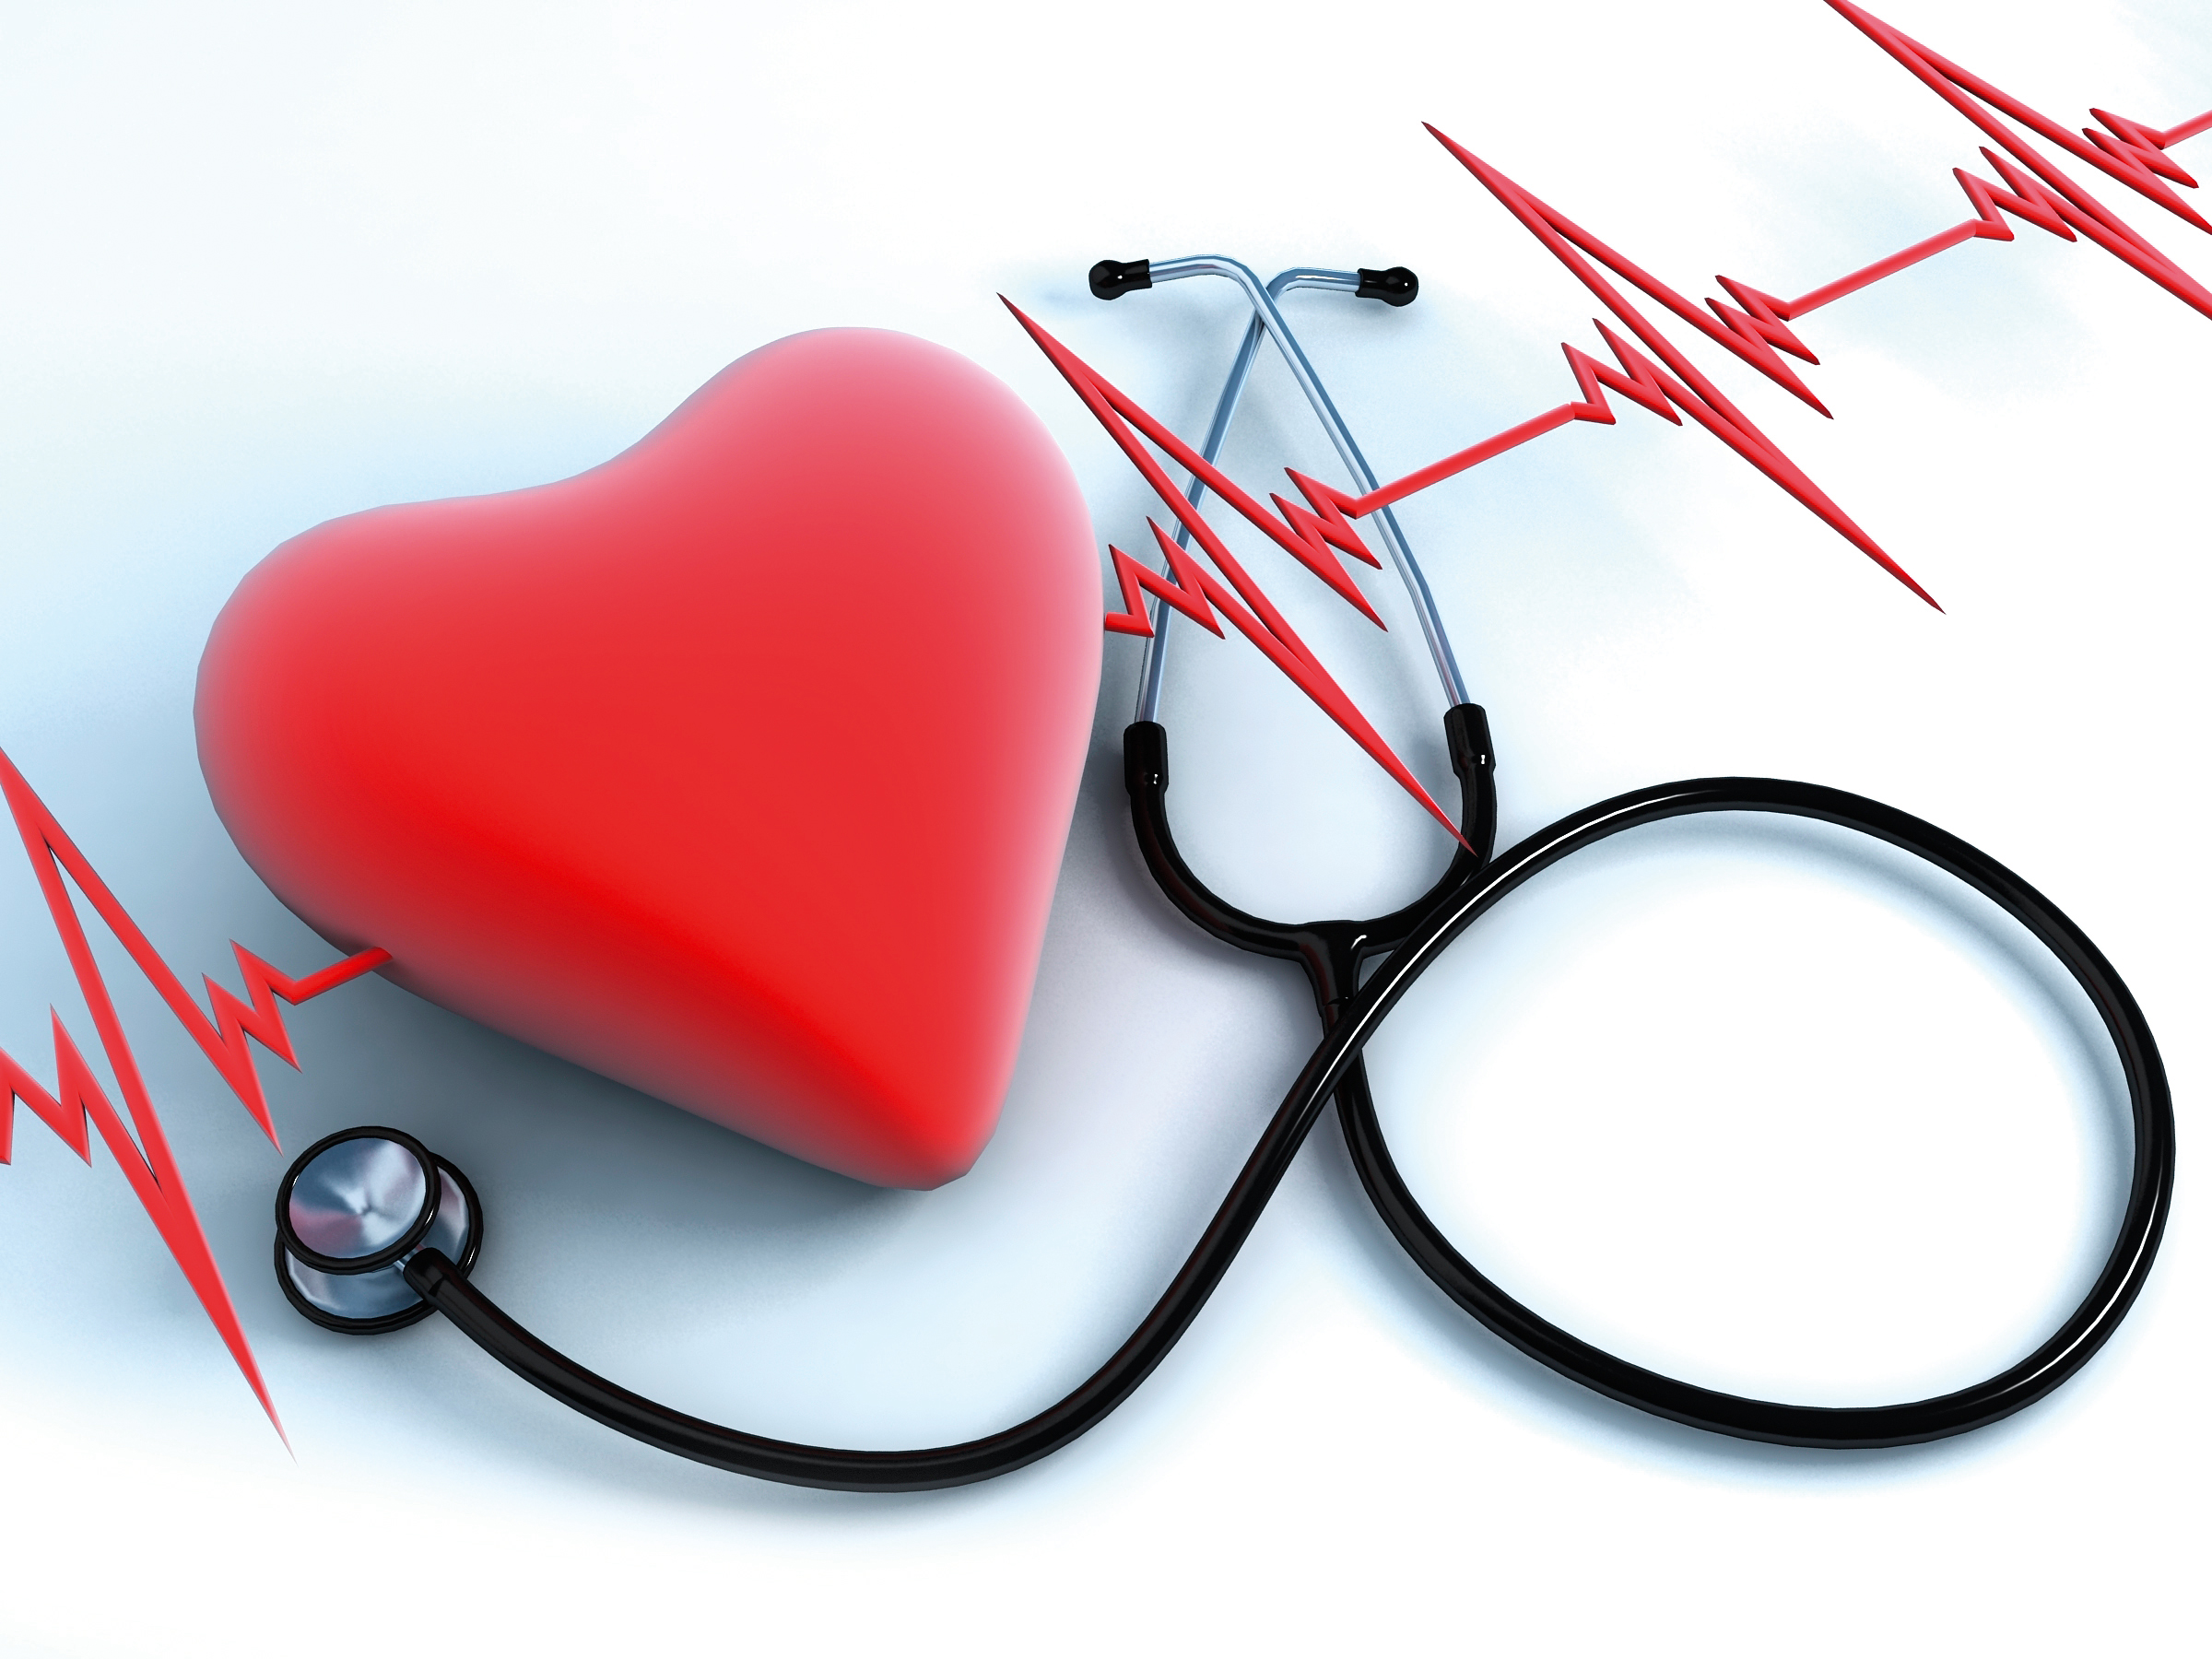 Желудочковые нарушения ритма сердца и профилактика внезапной сердечной смерти